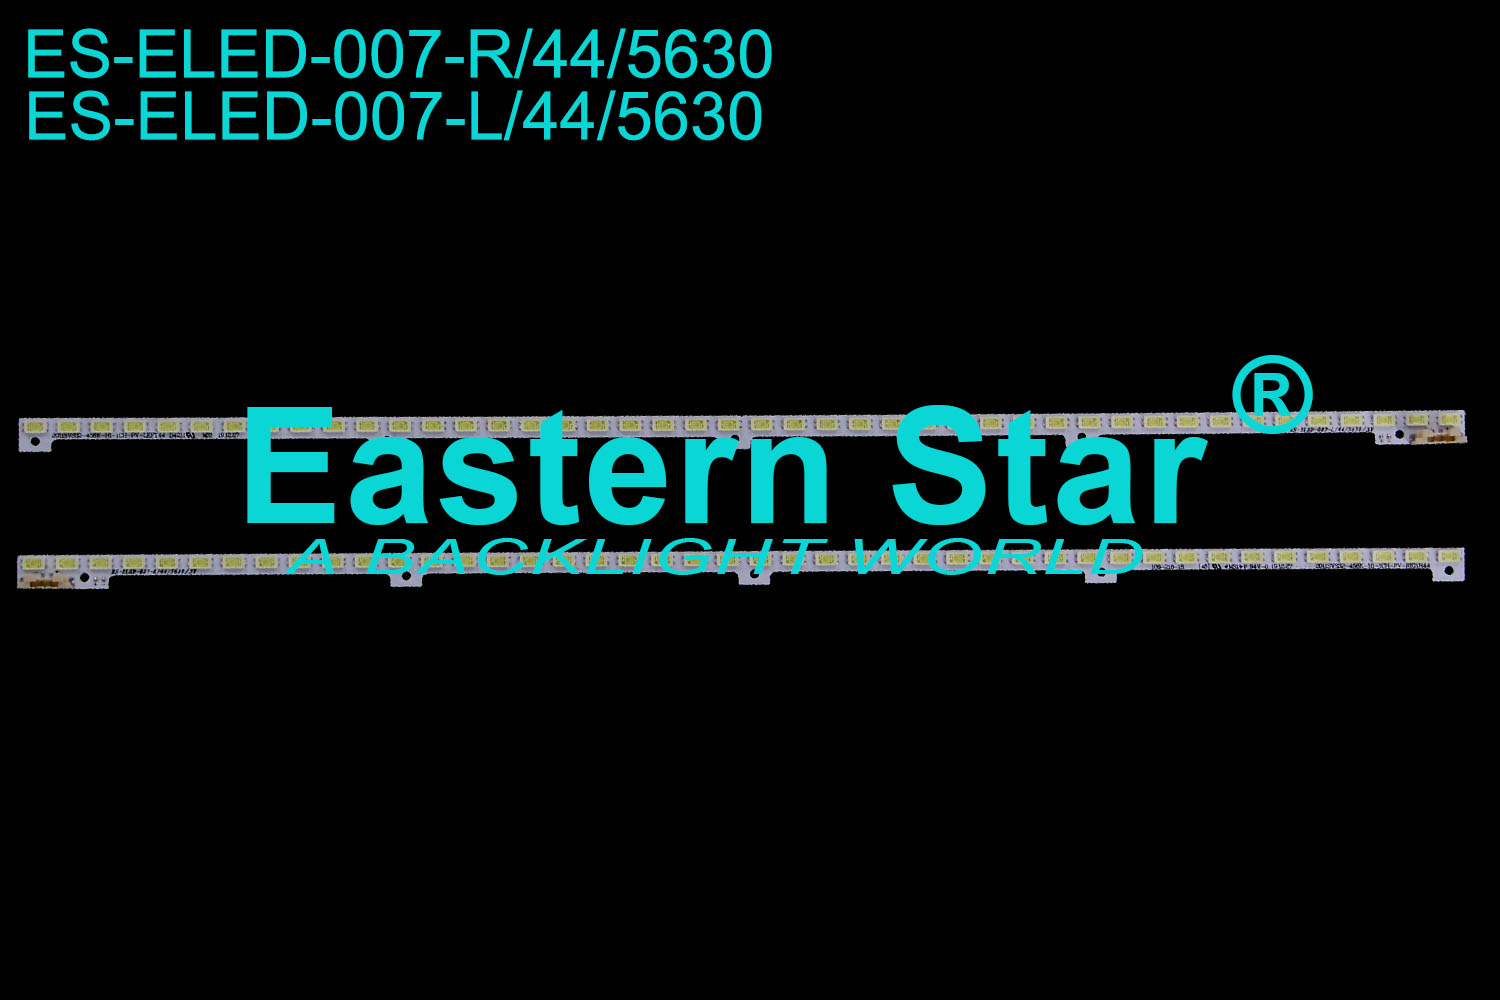 ES-ELED-007 ELED/EDGE TV backlight use for Samsung 32" 44 LEDs 2011SVS32-FHD-5K6K-RIGHT/LEFT JVG4-320SMB/A-R2[10,12,08]